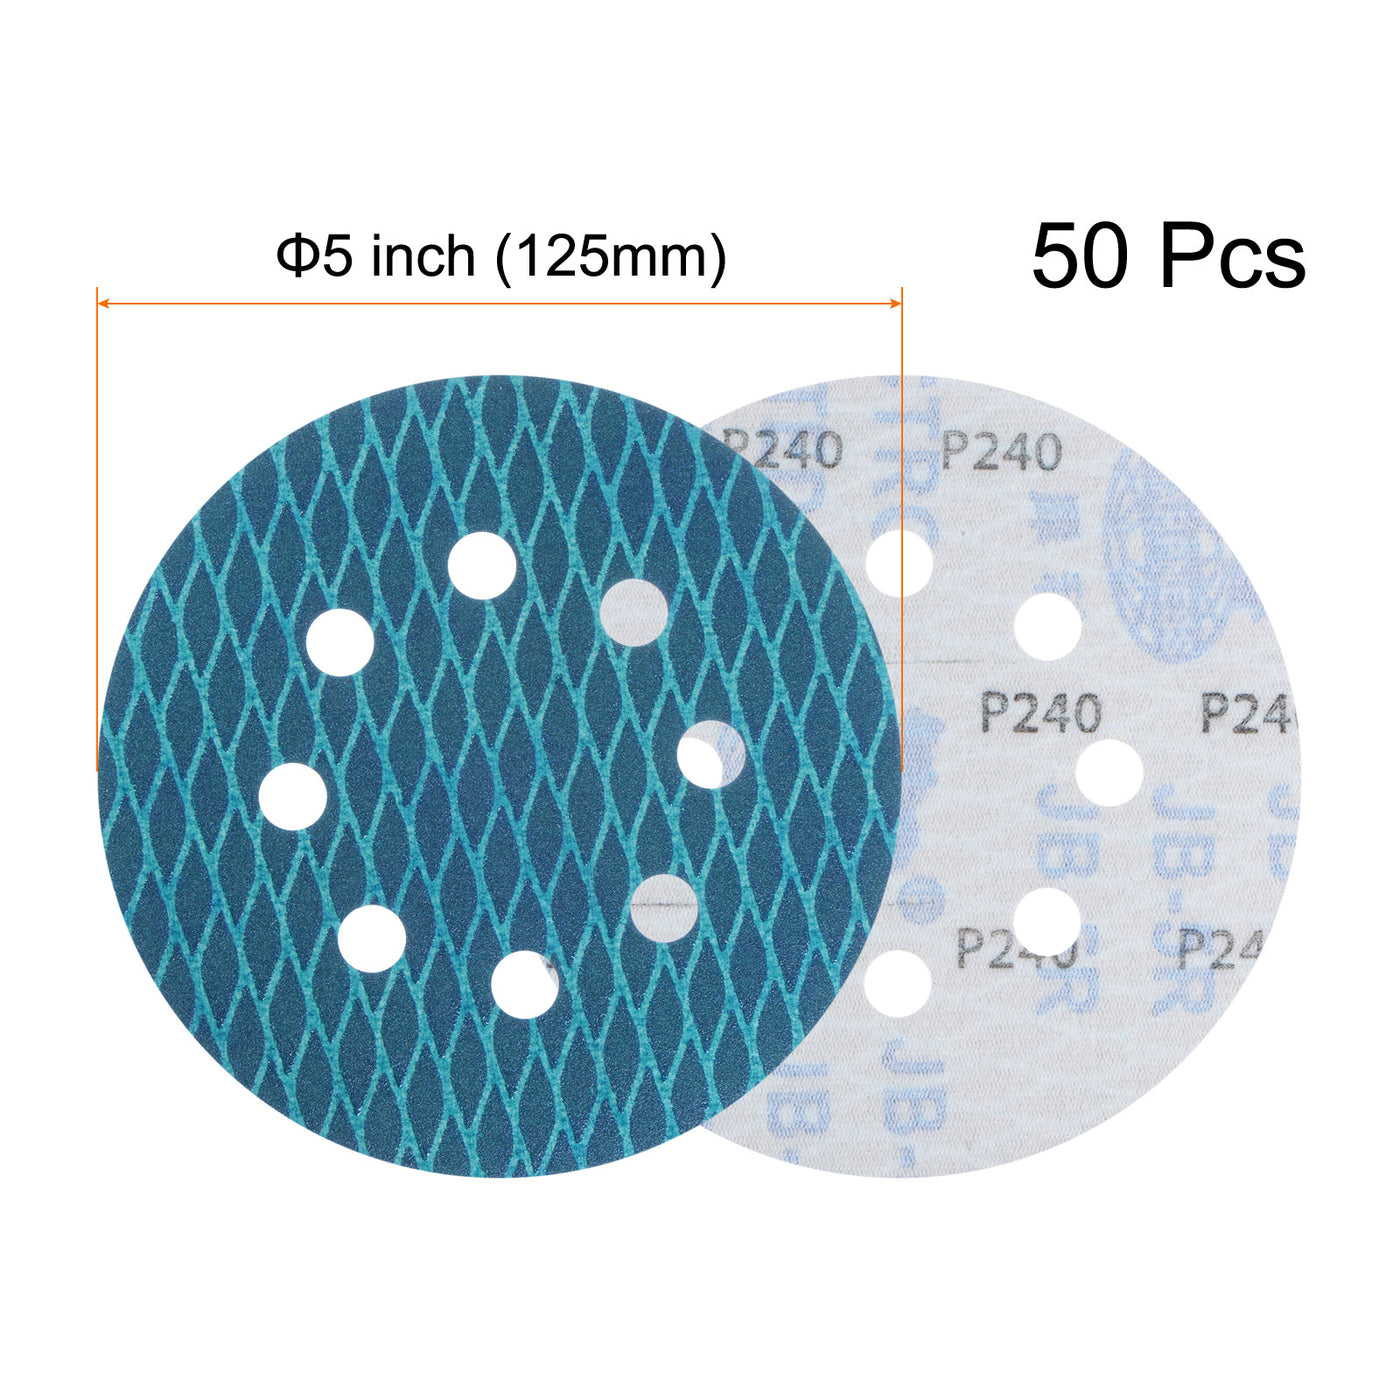 Harfington 50pcs Diamond Shape Sanding Discs 5" 240 Grit Hook & Loop Rhomb Sandpaper 8 Hole